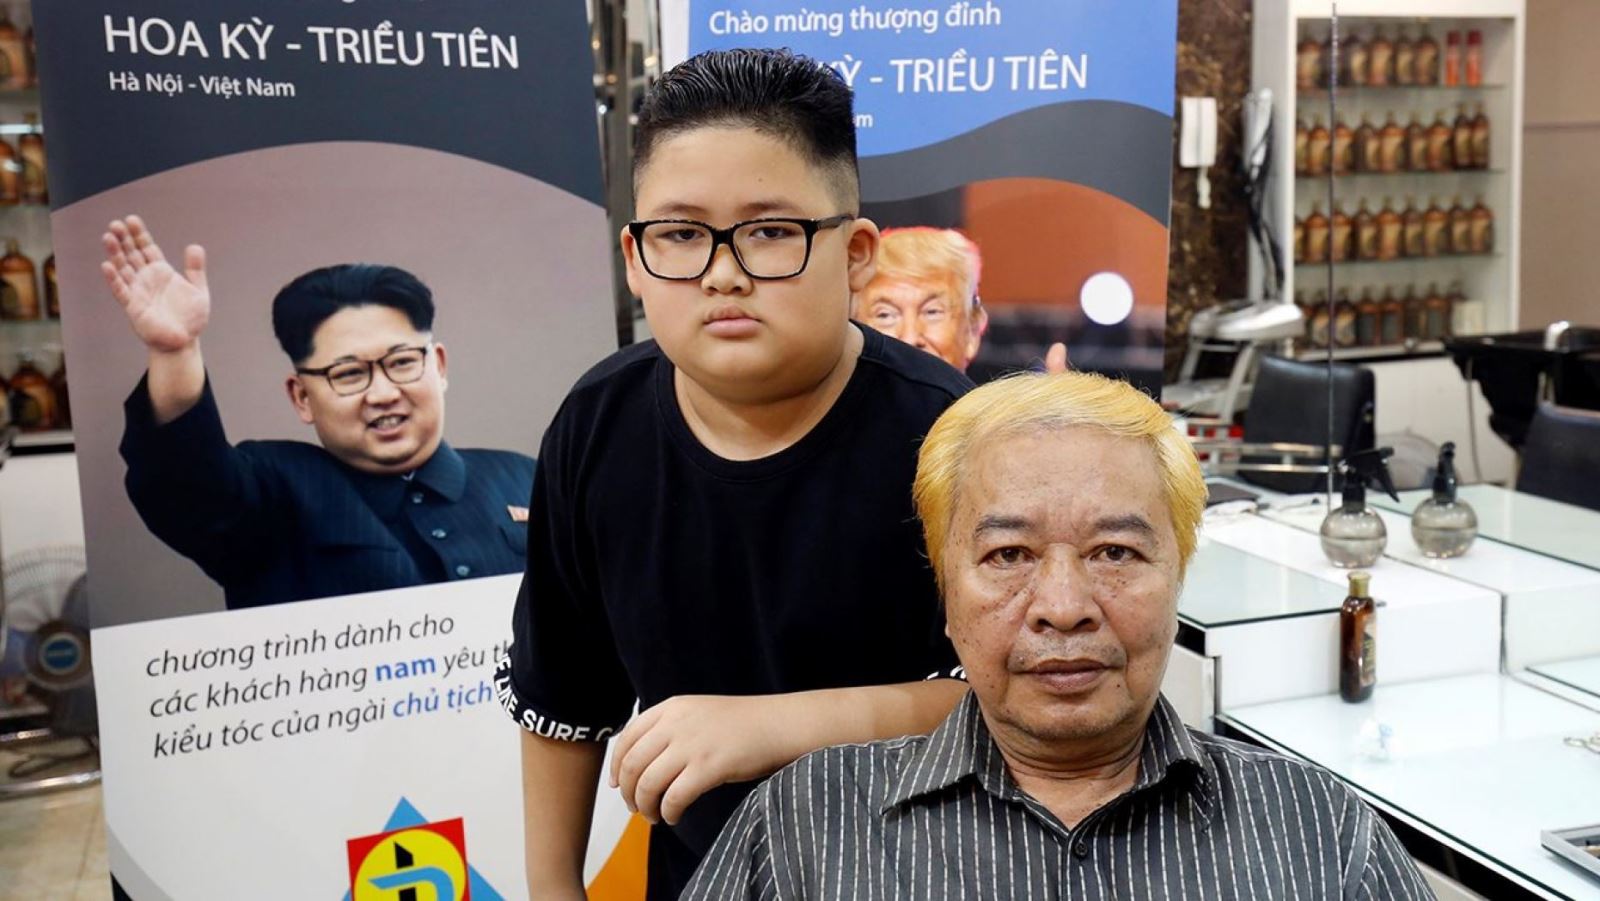 Thợ tóc Việt miễn phí cắt tóc giống ông Kim Jong-un, Donald Trump |  baotintuc.vn